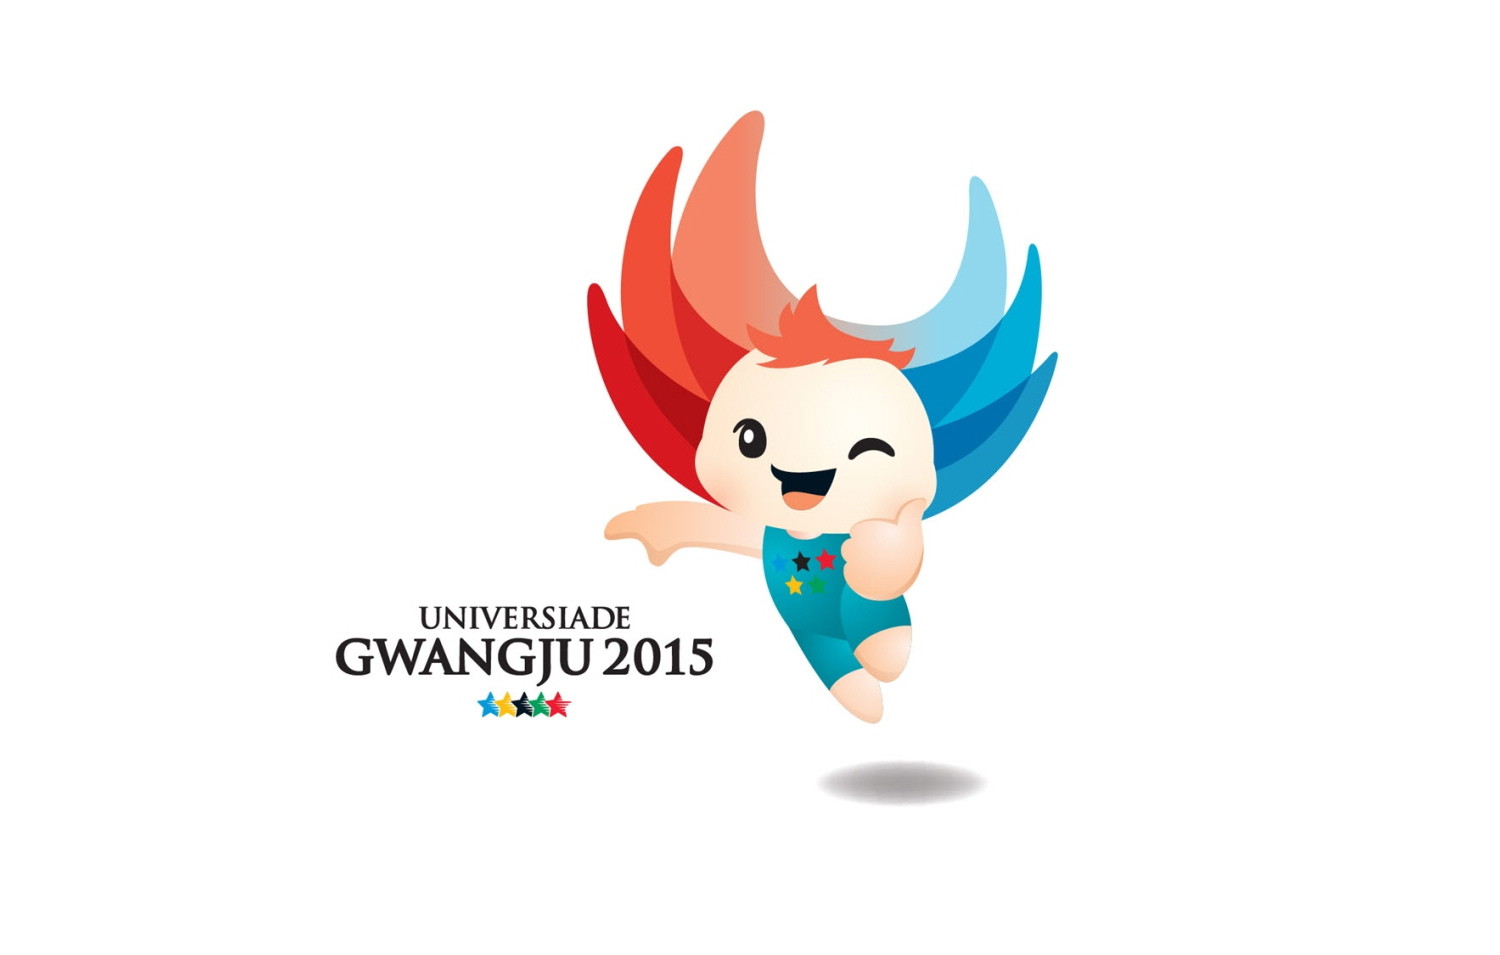 Universiade-válogatott: irány Gwangju